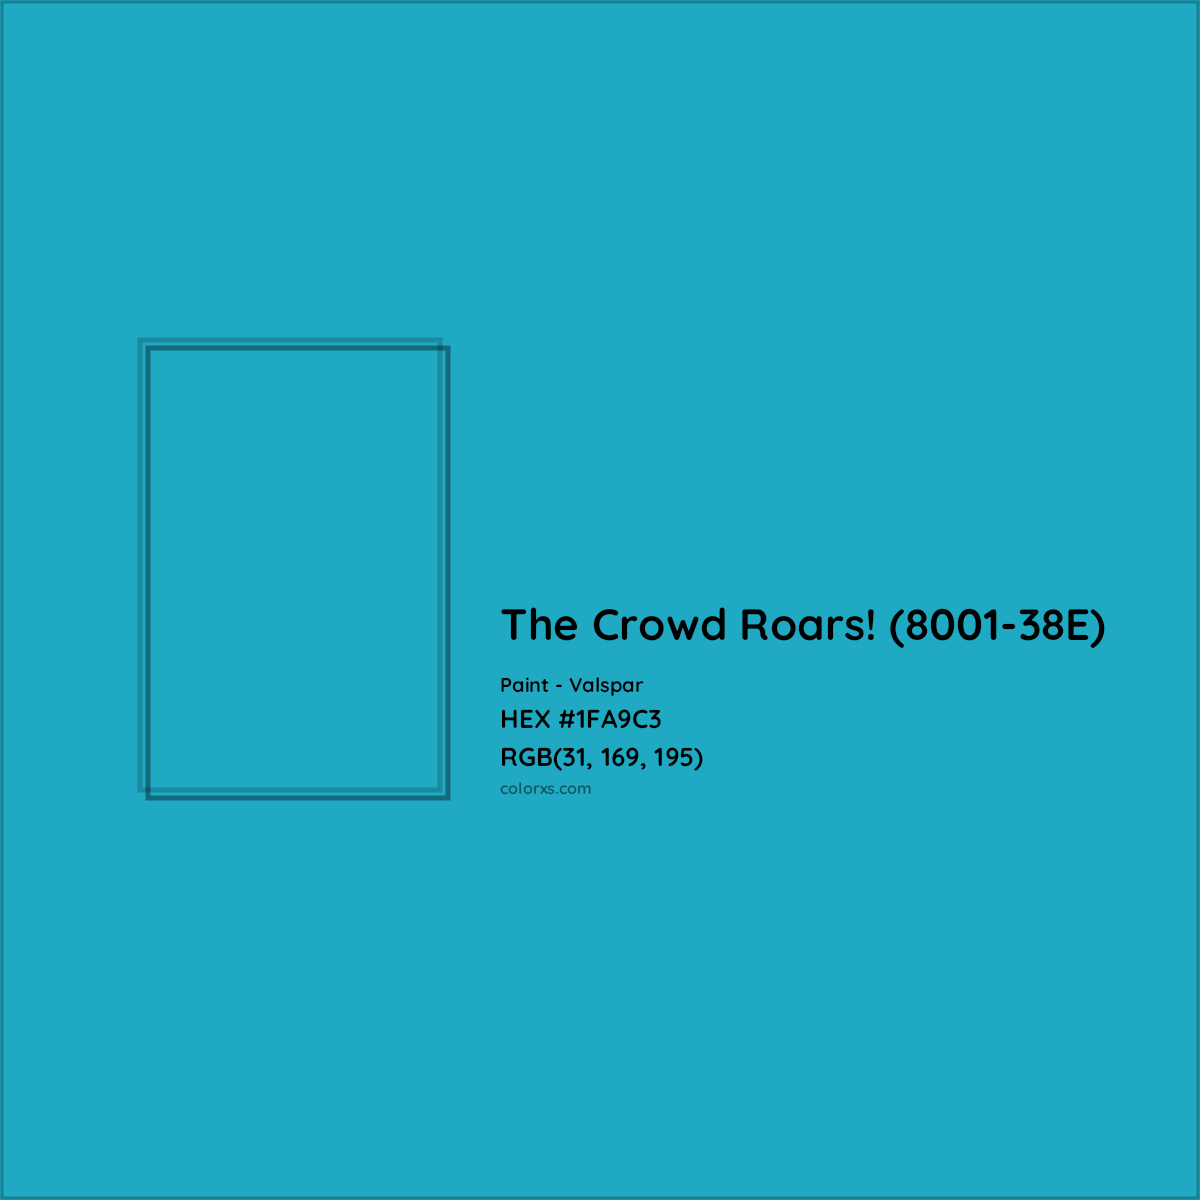 HEX #1FA9C3 The Crowd Roars! (8001-38E) Paint Valspar - Color Code